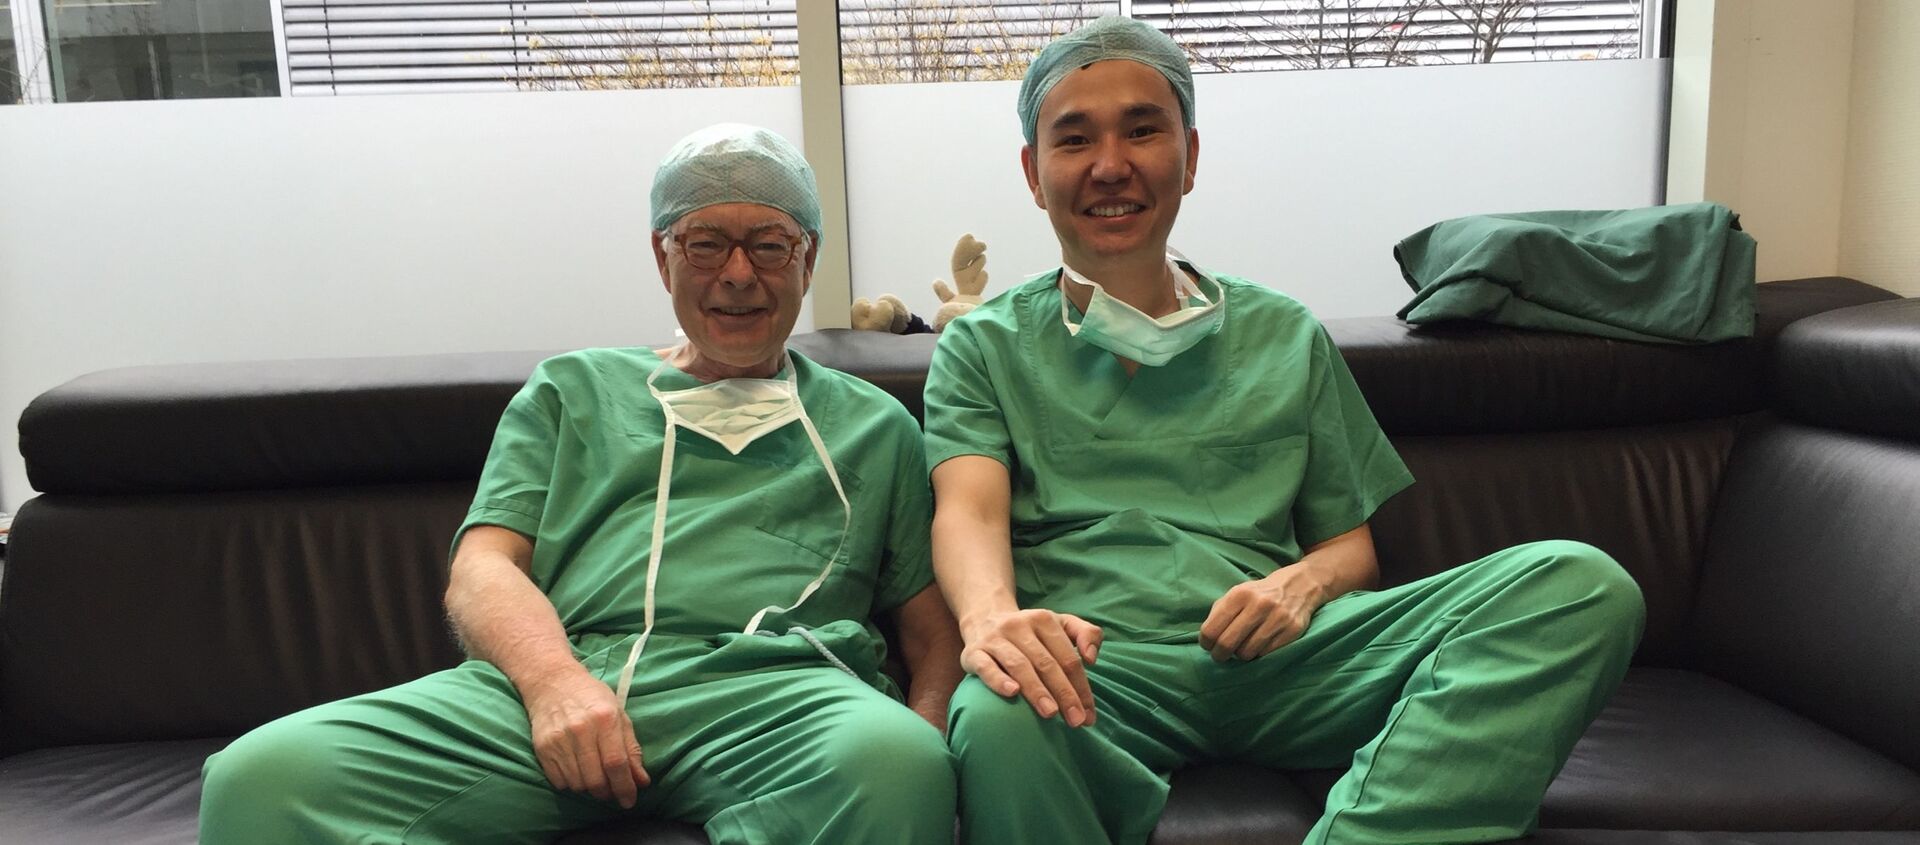 Врач-хирург в университетской клинике Эссен в Германии Азим Шайбеков (справа) с коллегой. Архивное фото - Sputnik Кыргызстан, 1920, 06.02.2021